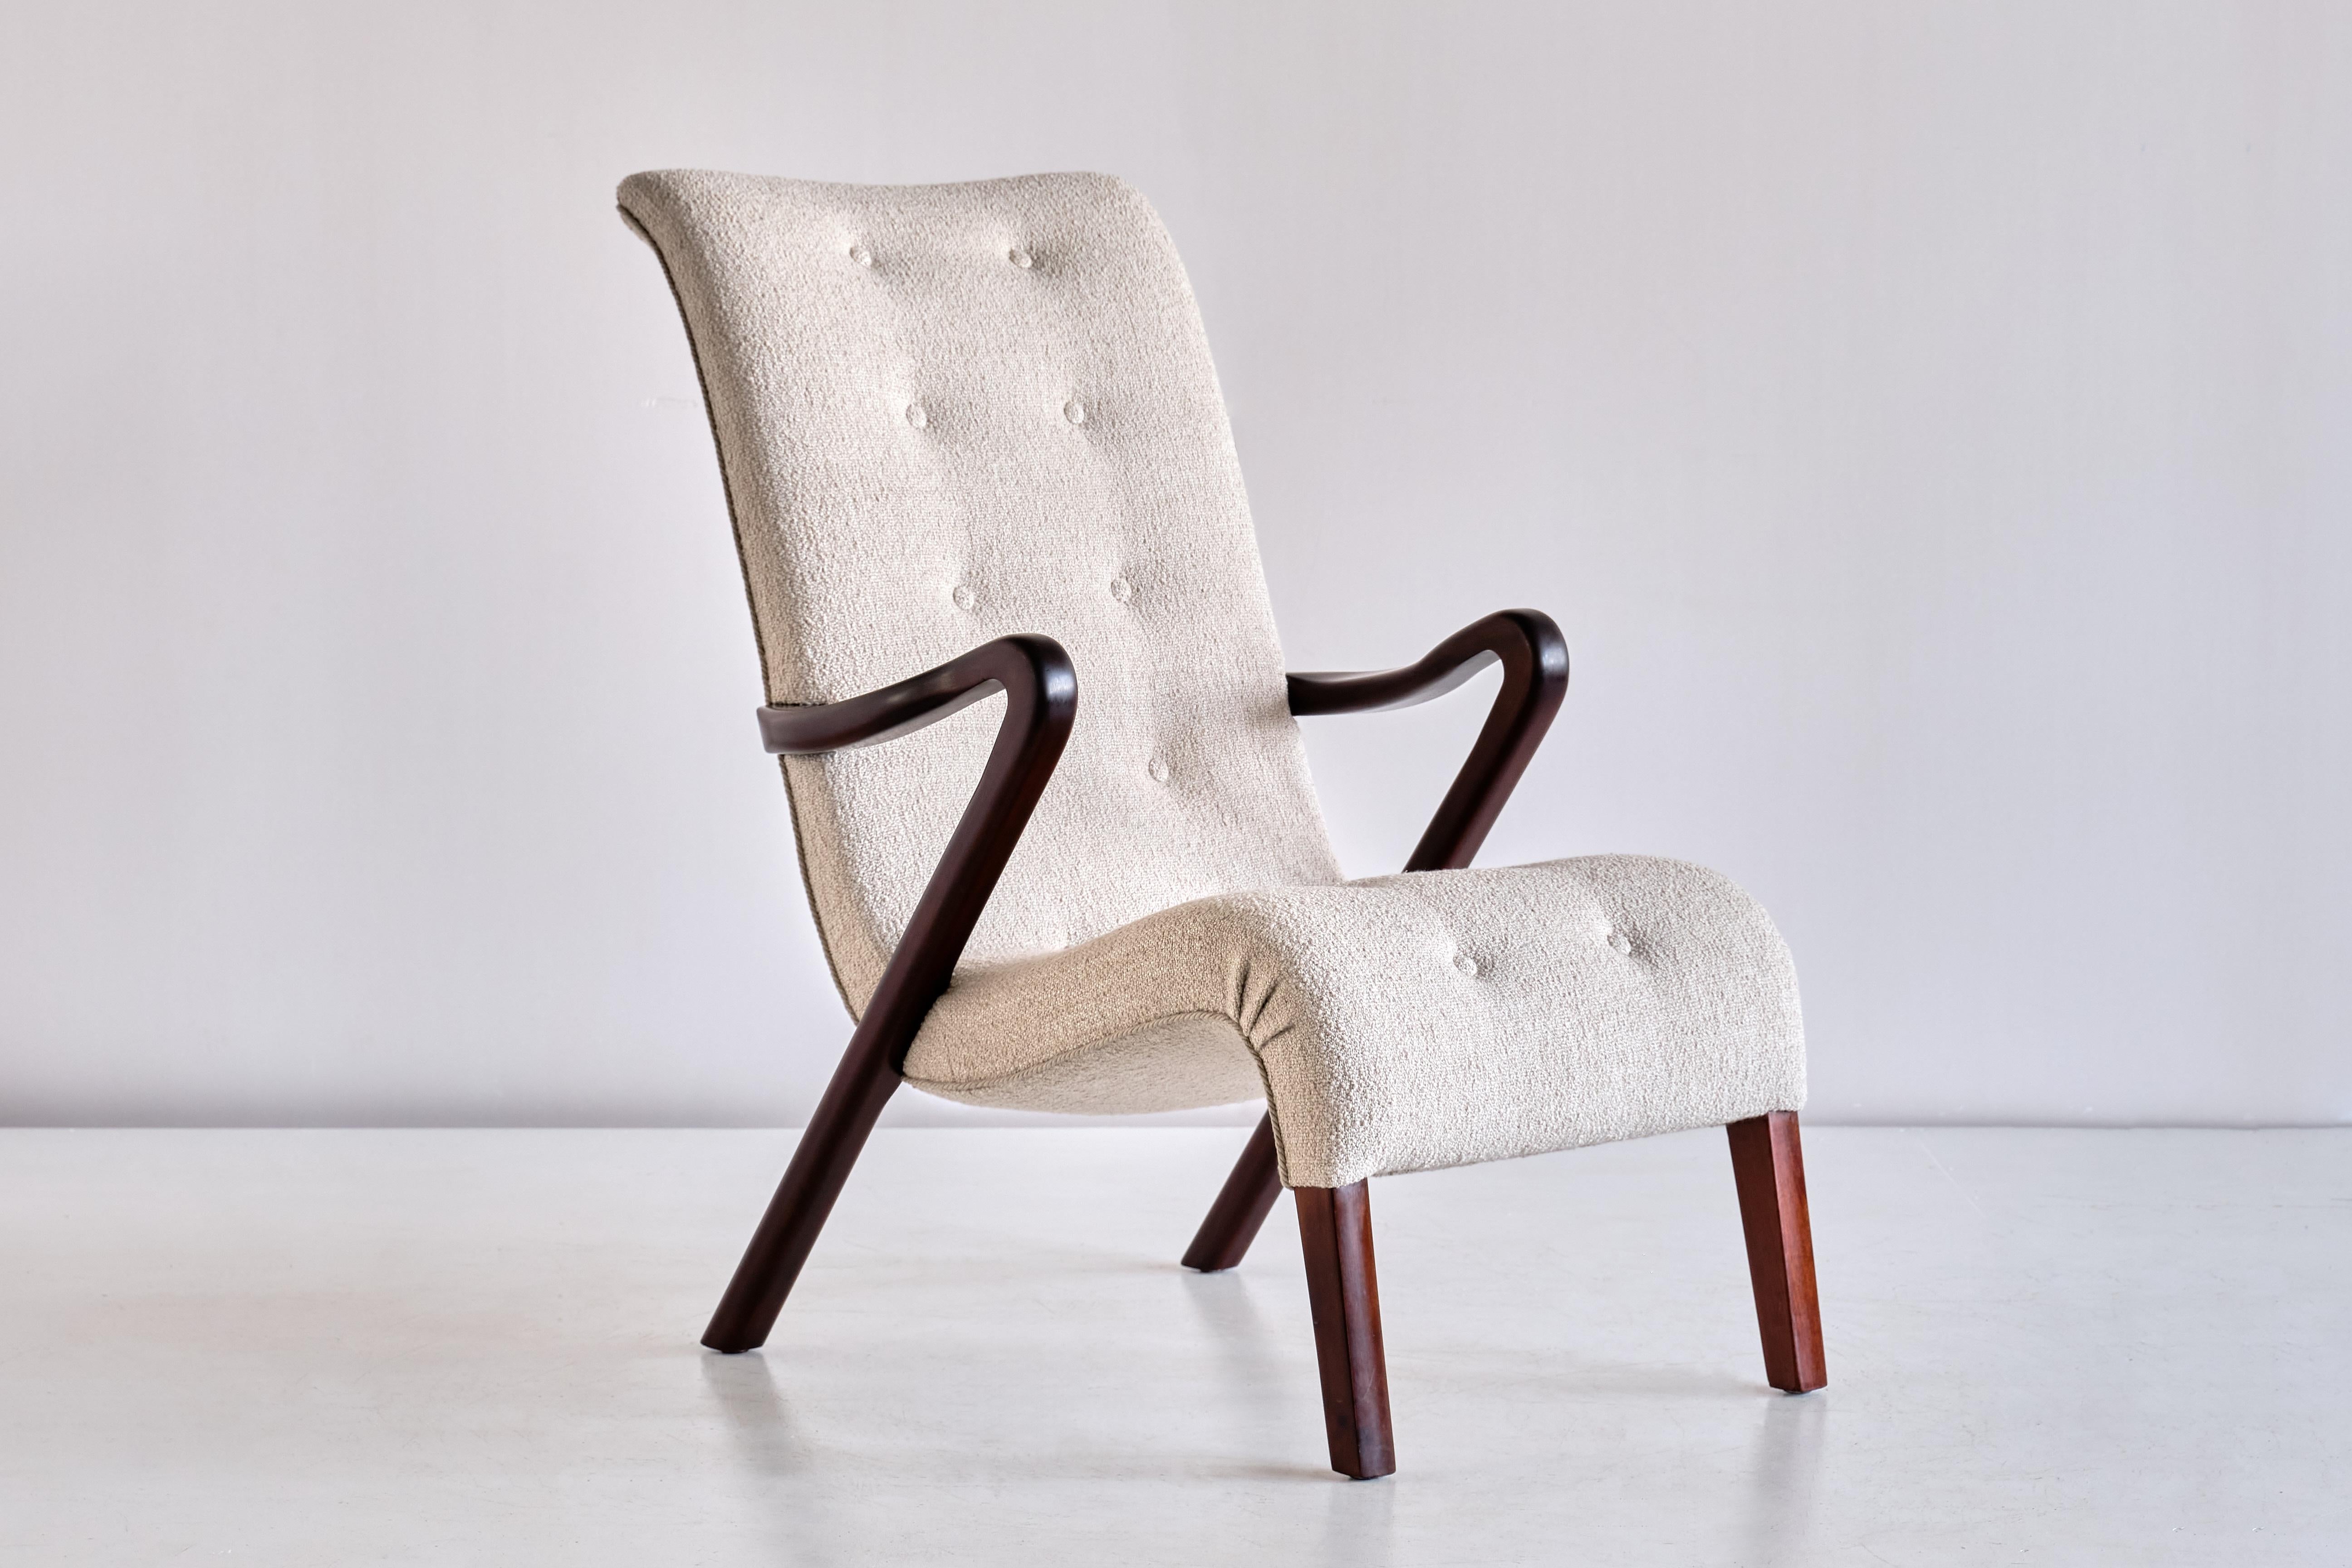 Ce fauteuil rare a été conçu par Axel Larsson et produit en Suède dans les années 1940. Le design élégant et dynamique est formé par la forme incurvée des accoudoirs et du dossier. Les pieds et les accoudoirs sont en bois d'acajou foncé et massif.